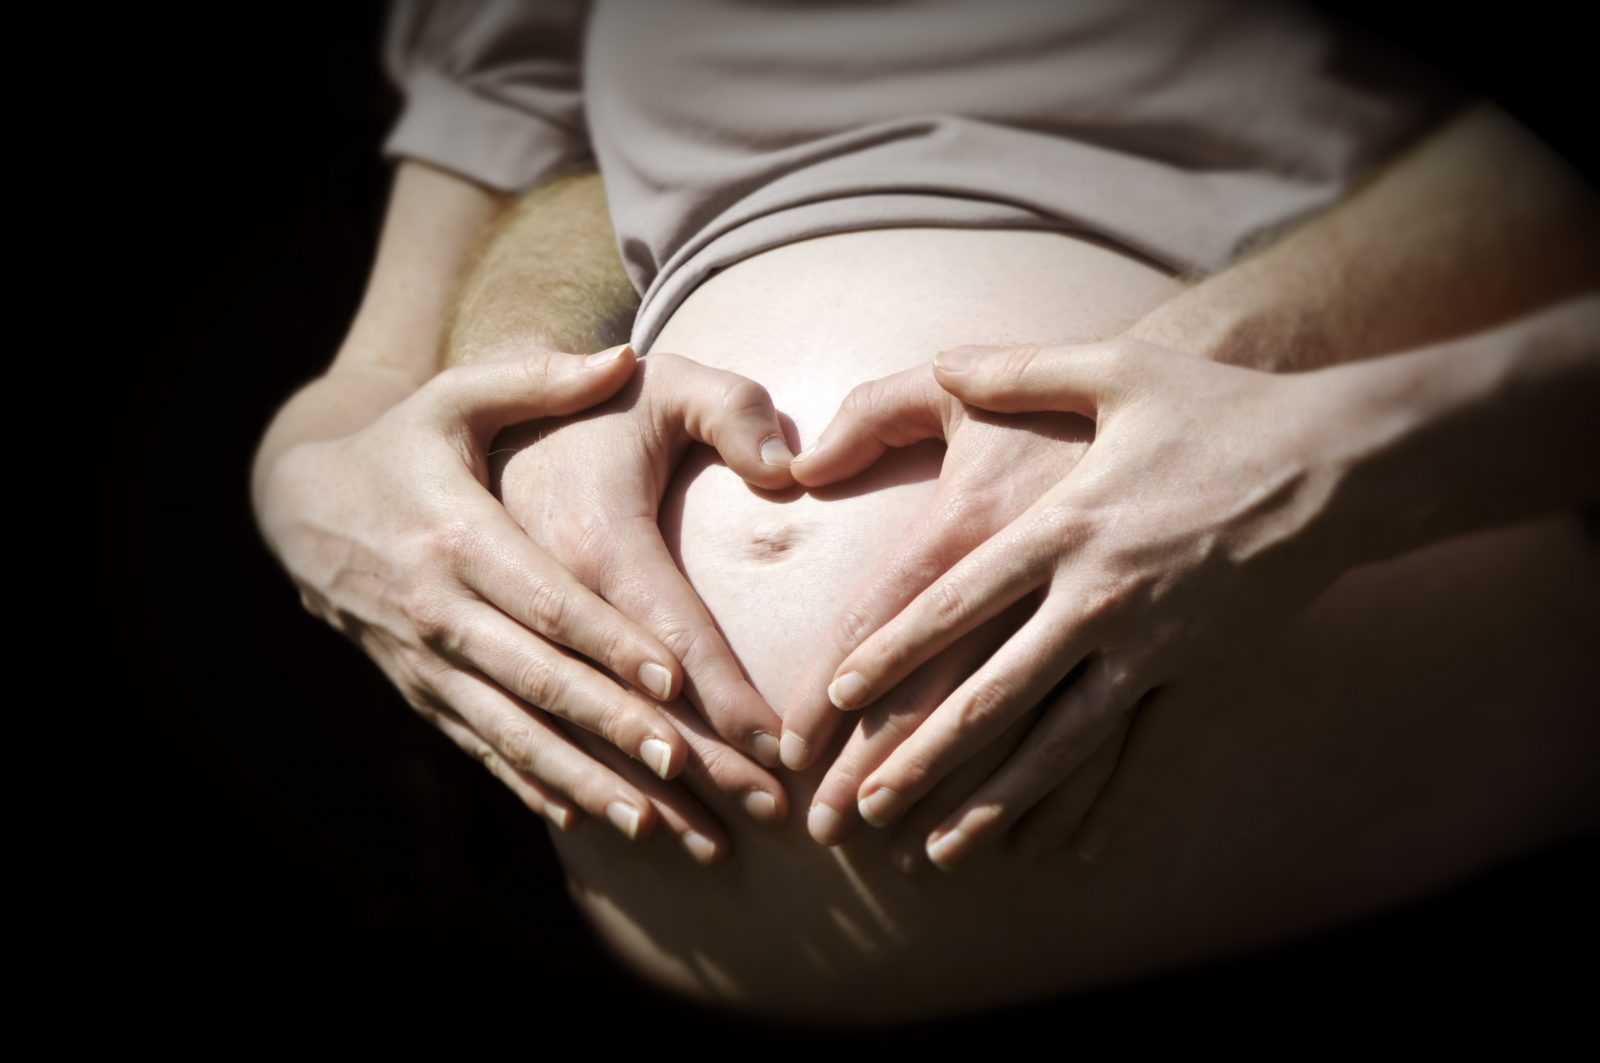 Jornada sobre la valoración del riesgo en el embarazo